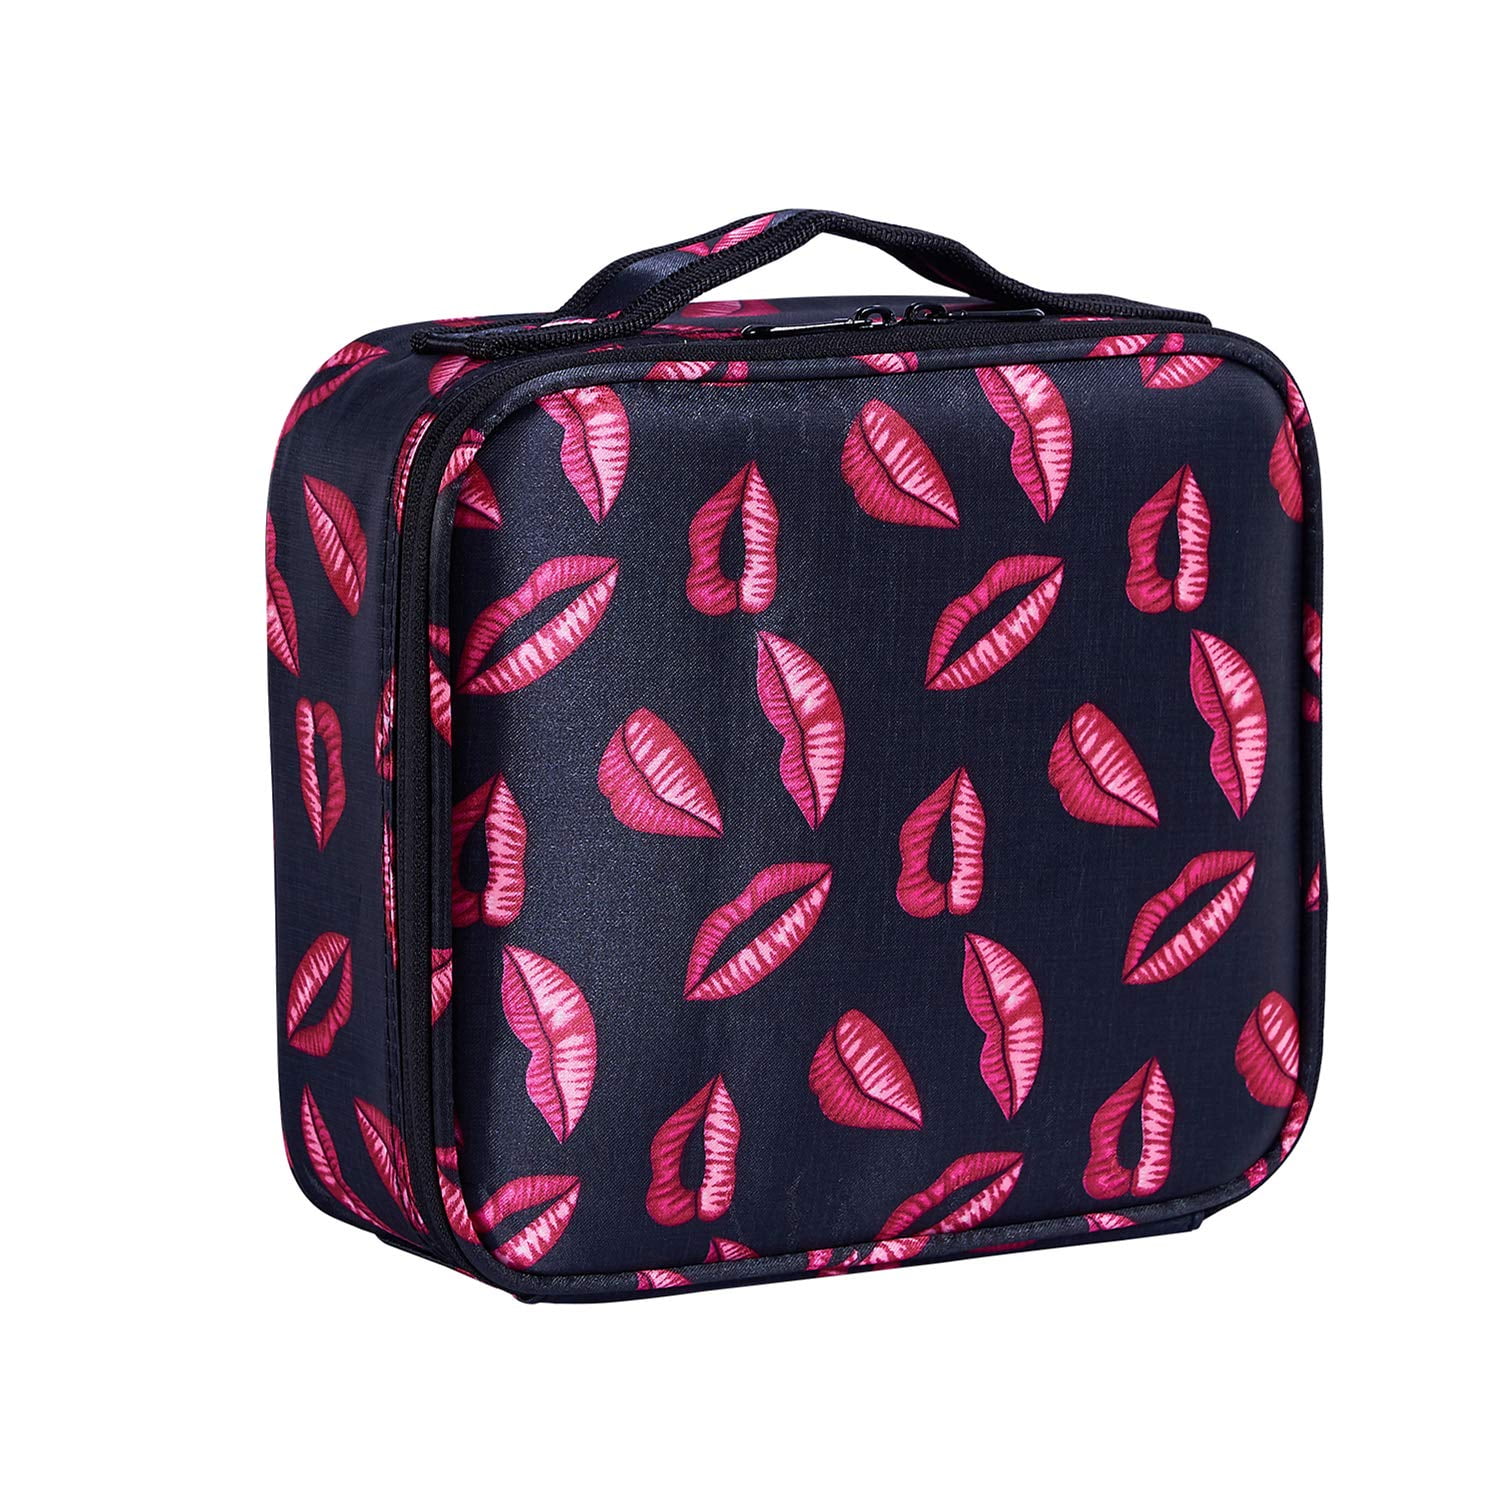 Gift Bag Stationery Bag 2PCS Kraft Paper Bags Makeup Case Basket Makeup Holder Organizer Storage Bin Travel Durable Bags for Makeuptools